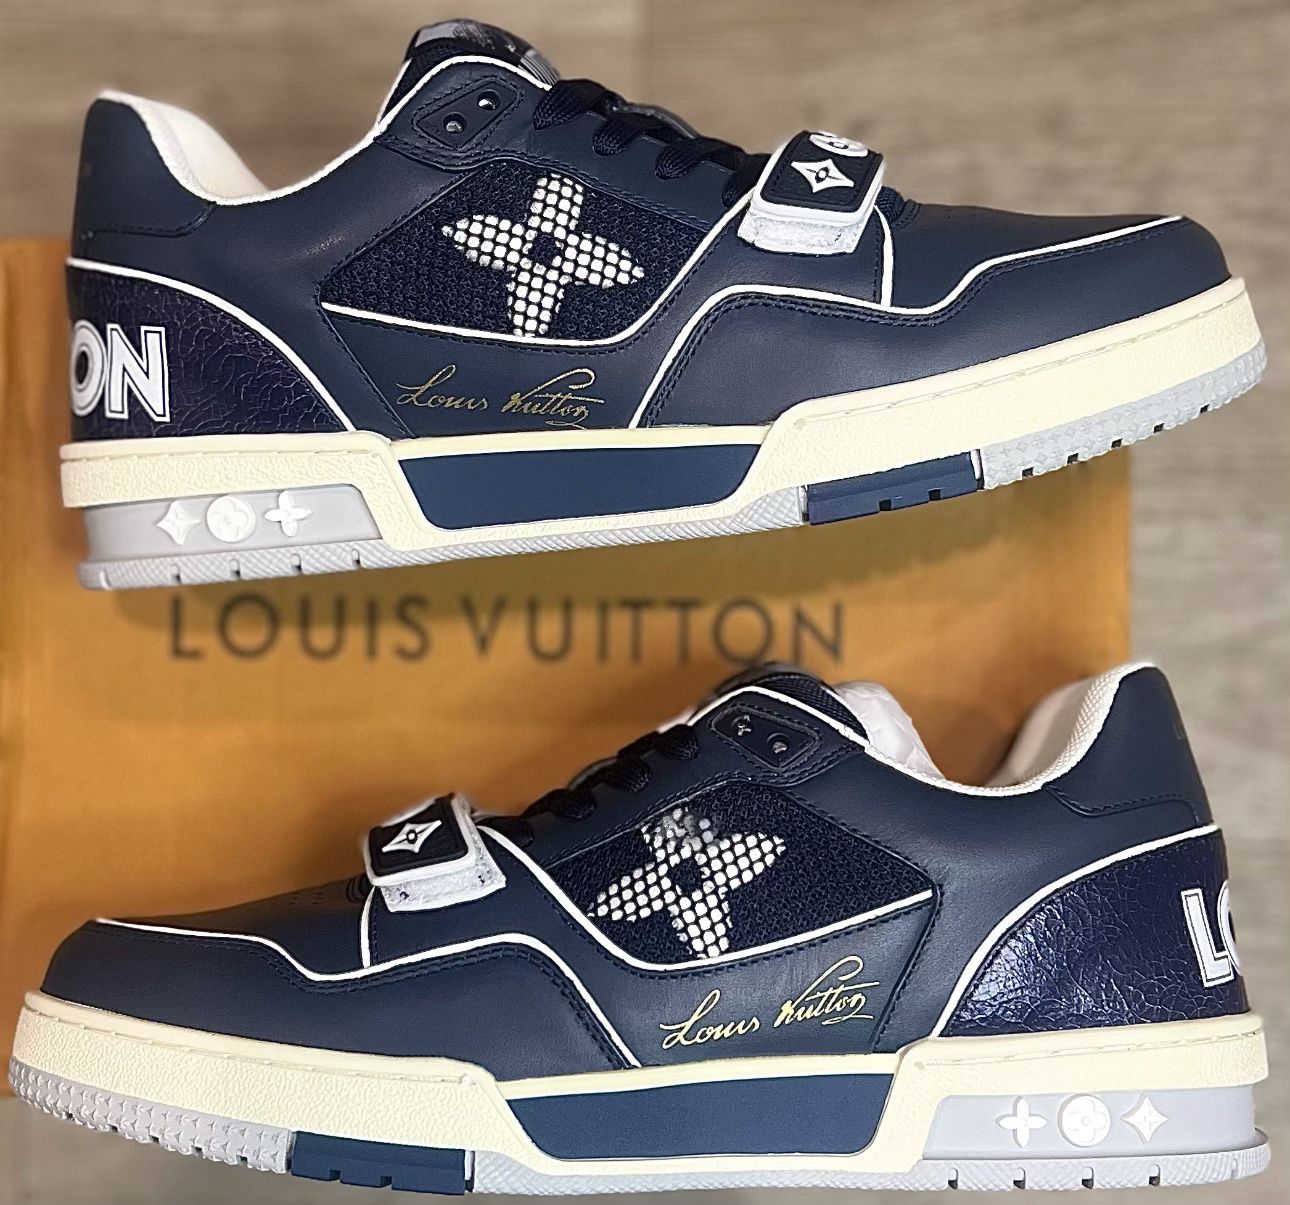 Louis Vuitton, Shoes, Luis Vuitton Mens Sneaker Size 8